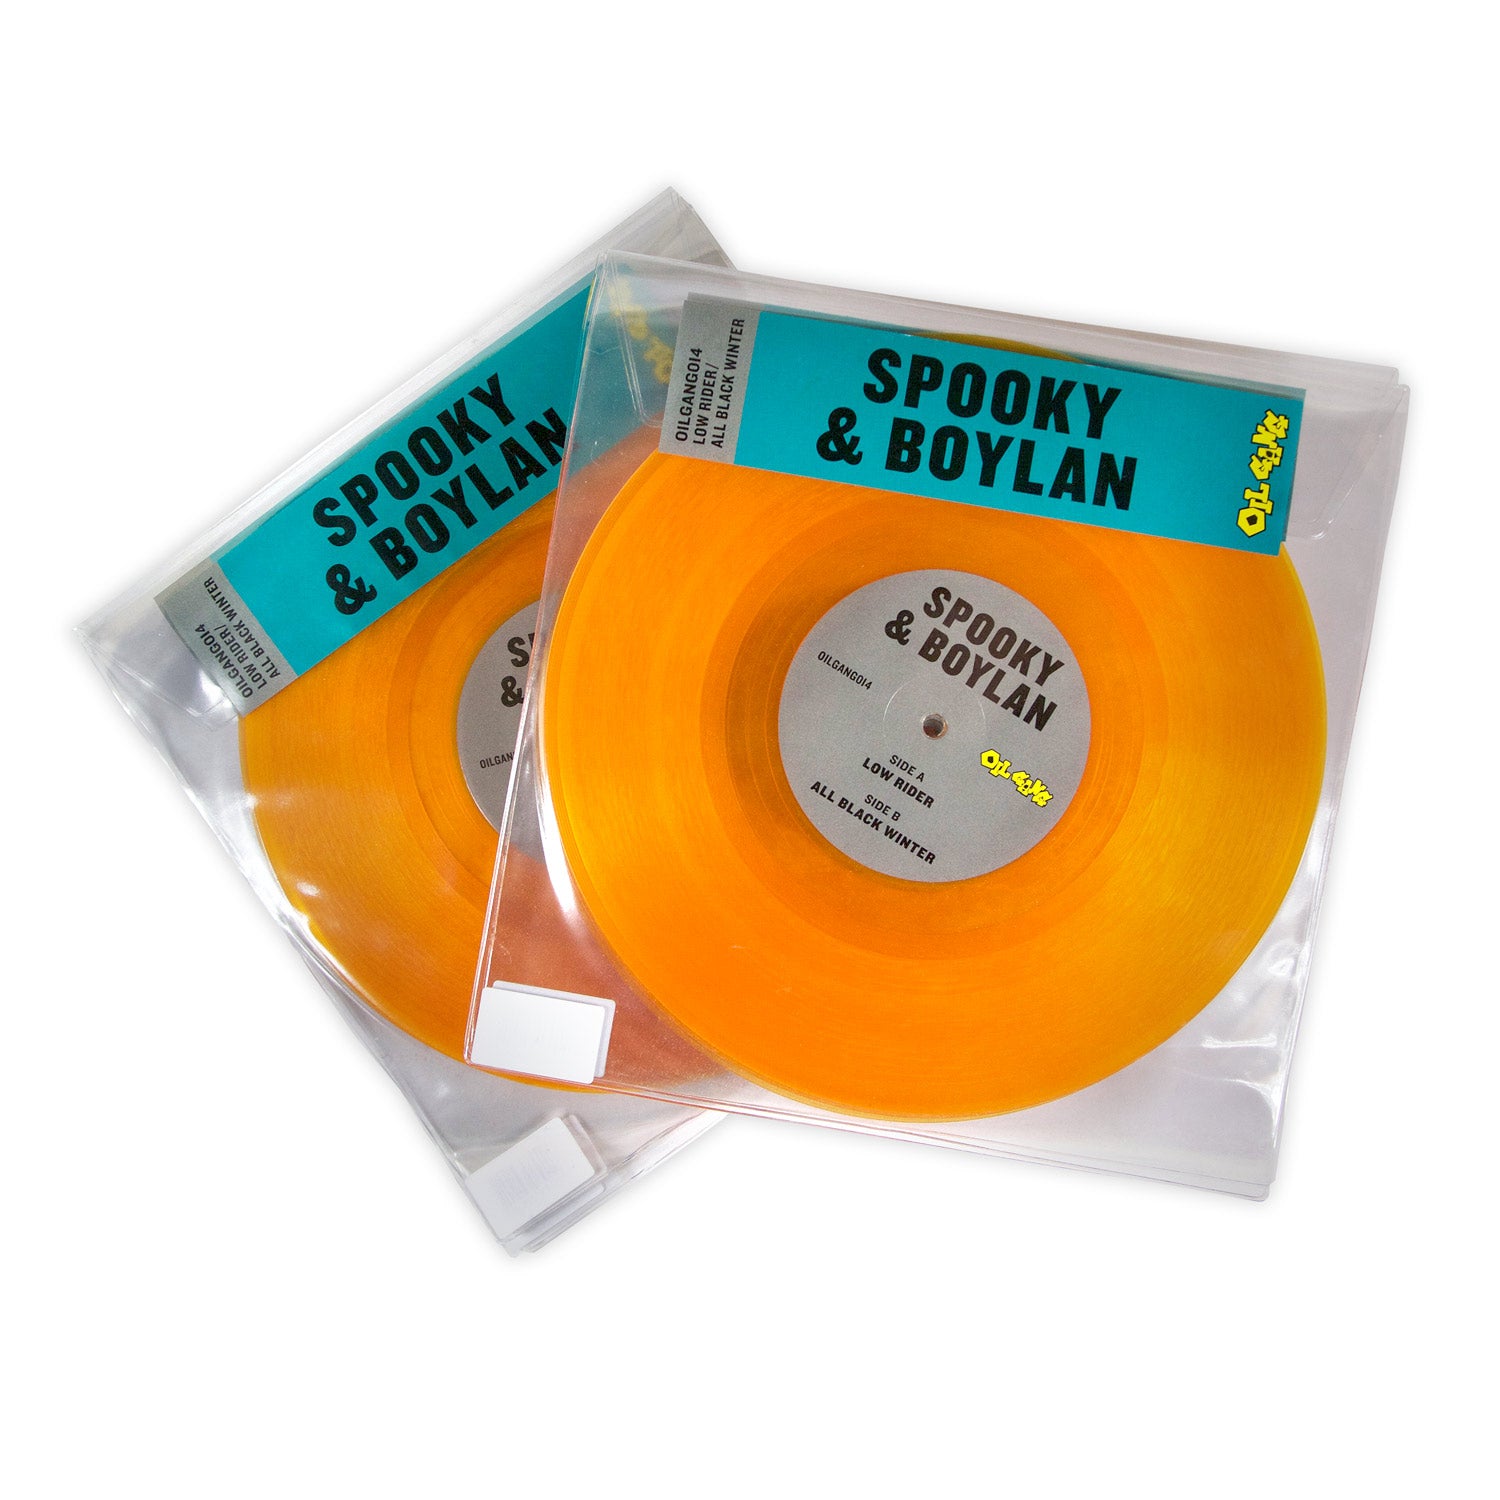 Spooky-Boylan